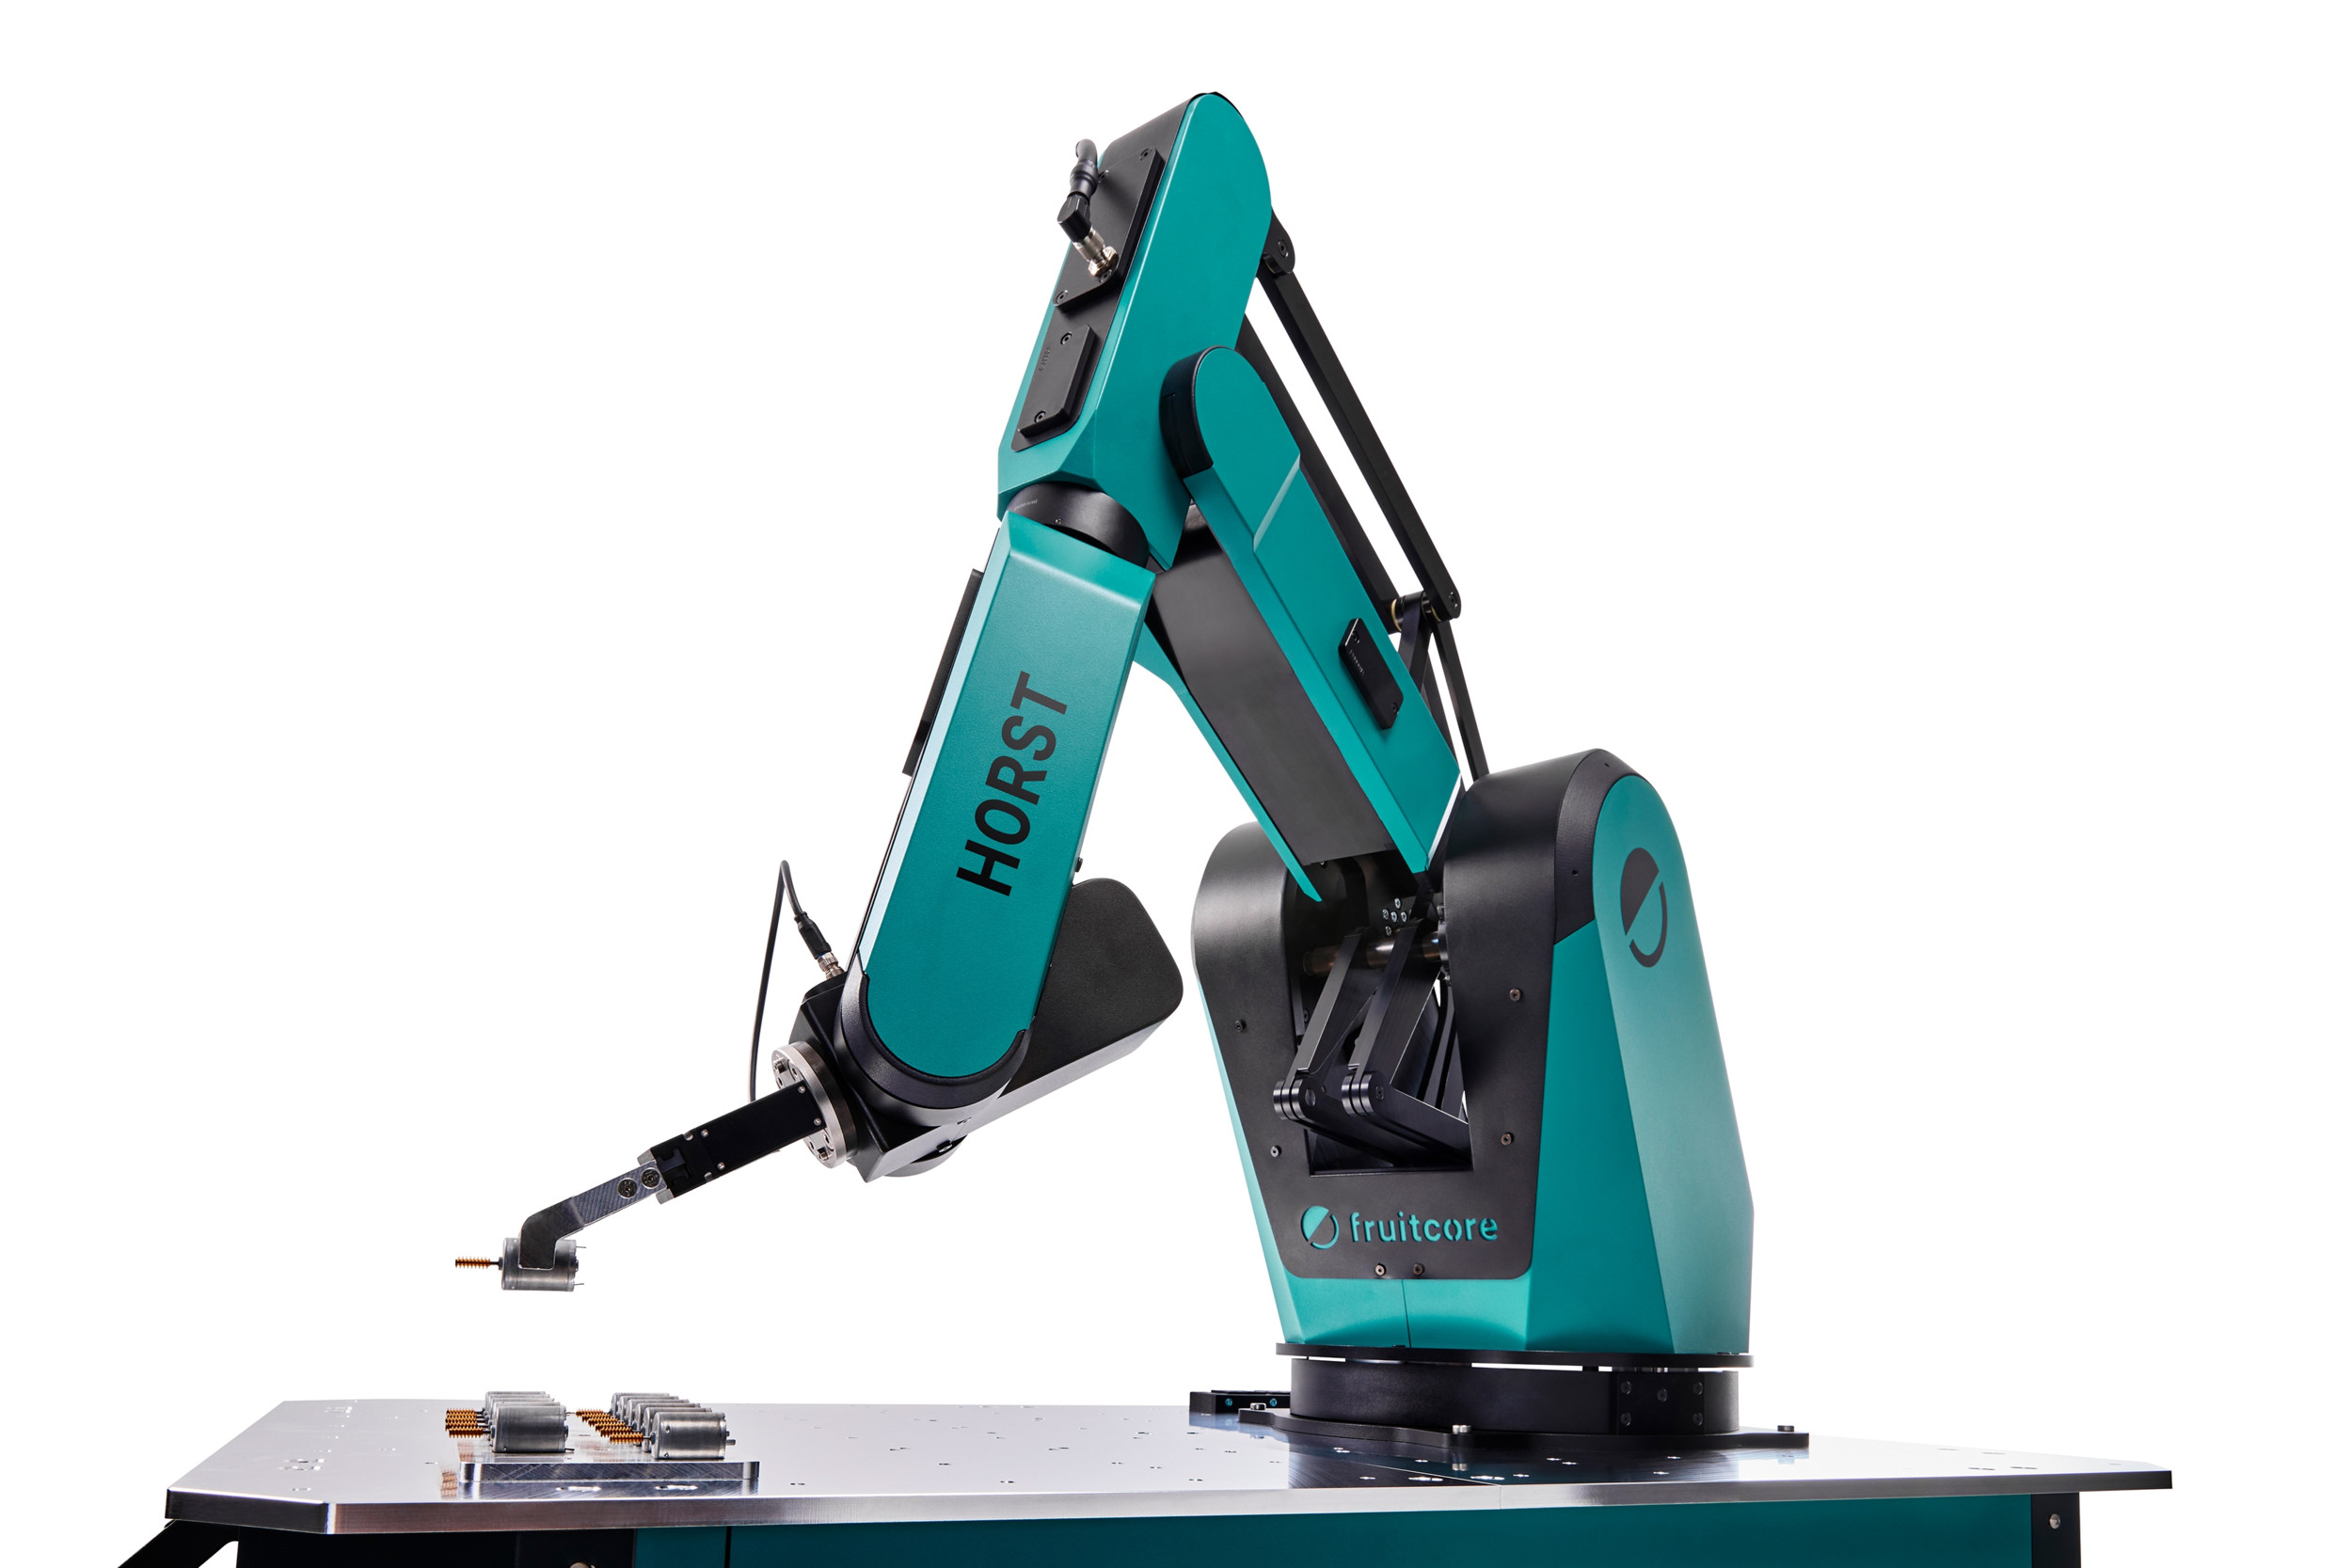 Mit dem neuen Roboter sind eine Vielzahl von Anwendungen möglich. Er ist wie geschaffen für Maschinenbestückung und Pick&Place-Anwendungen. 